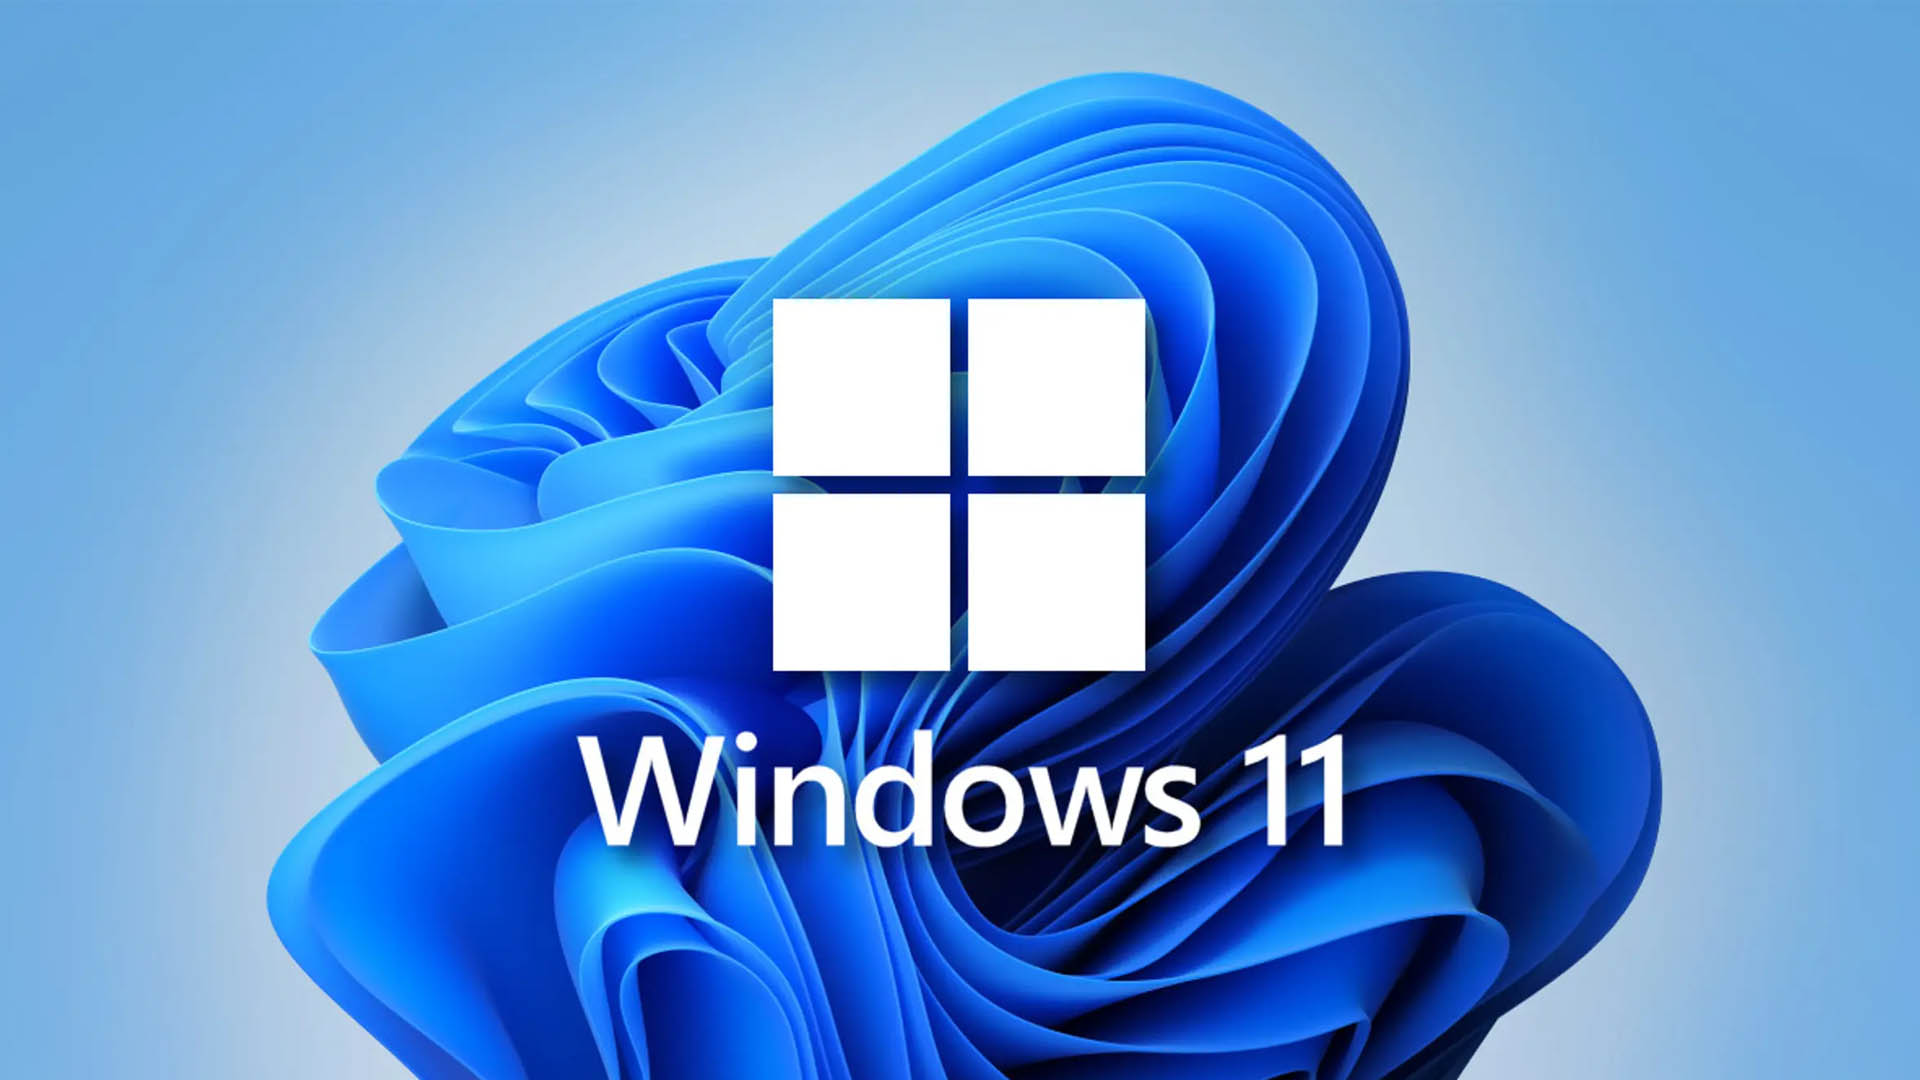 Prime differenze tra Windows 10 e 11